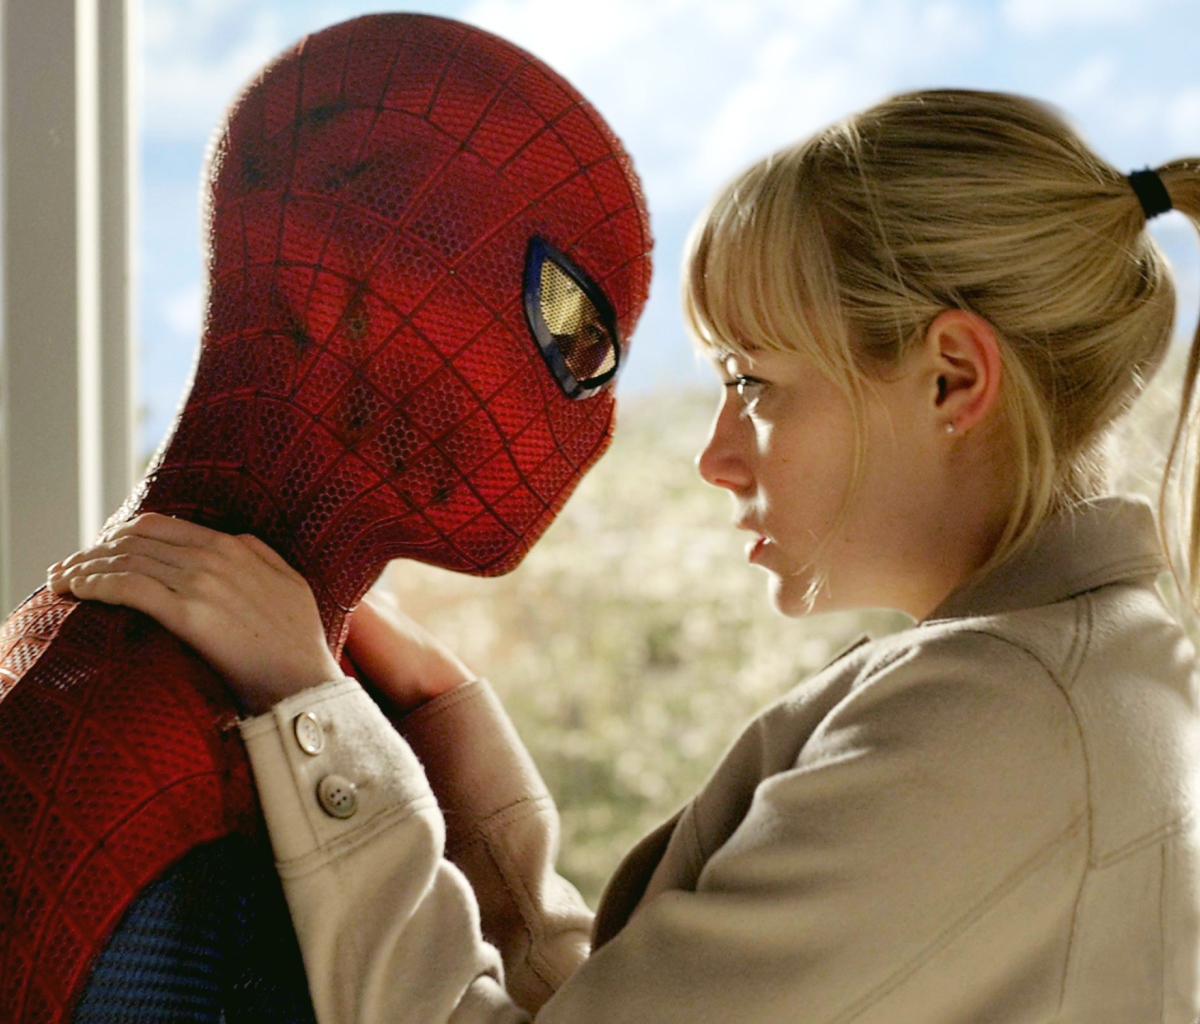 Spider Man & Gwen Stacy wallpaper 1200x1024